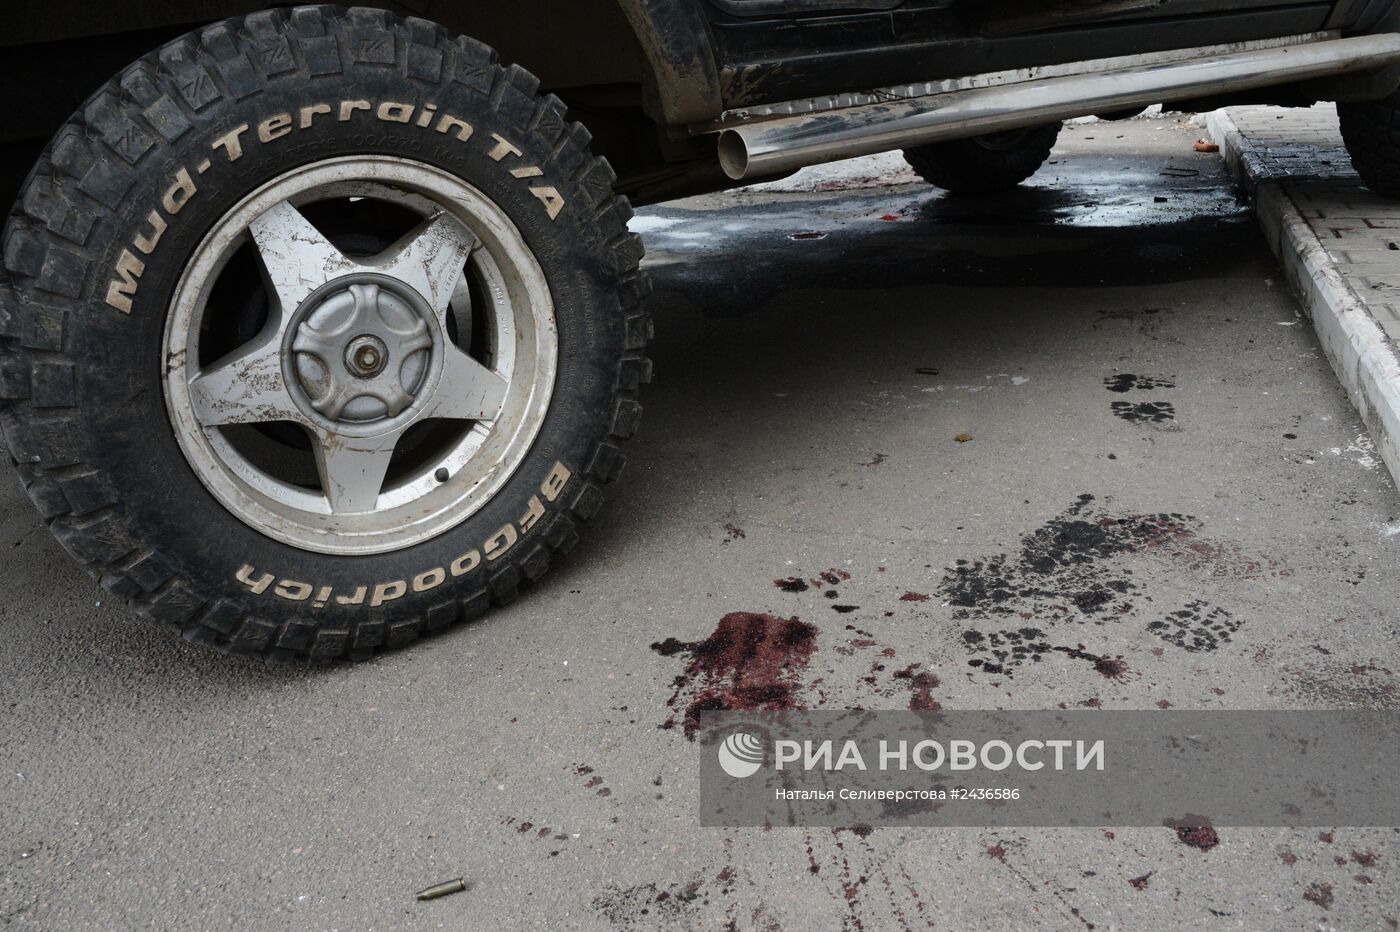 Последствия вооруженного столкновения в районе села Карловка Донецкой области